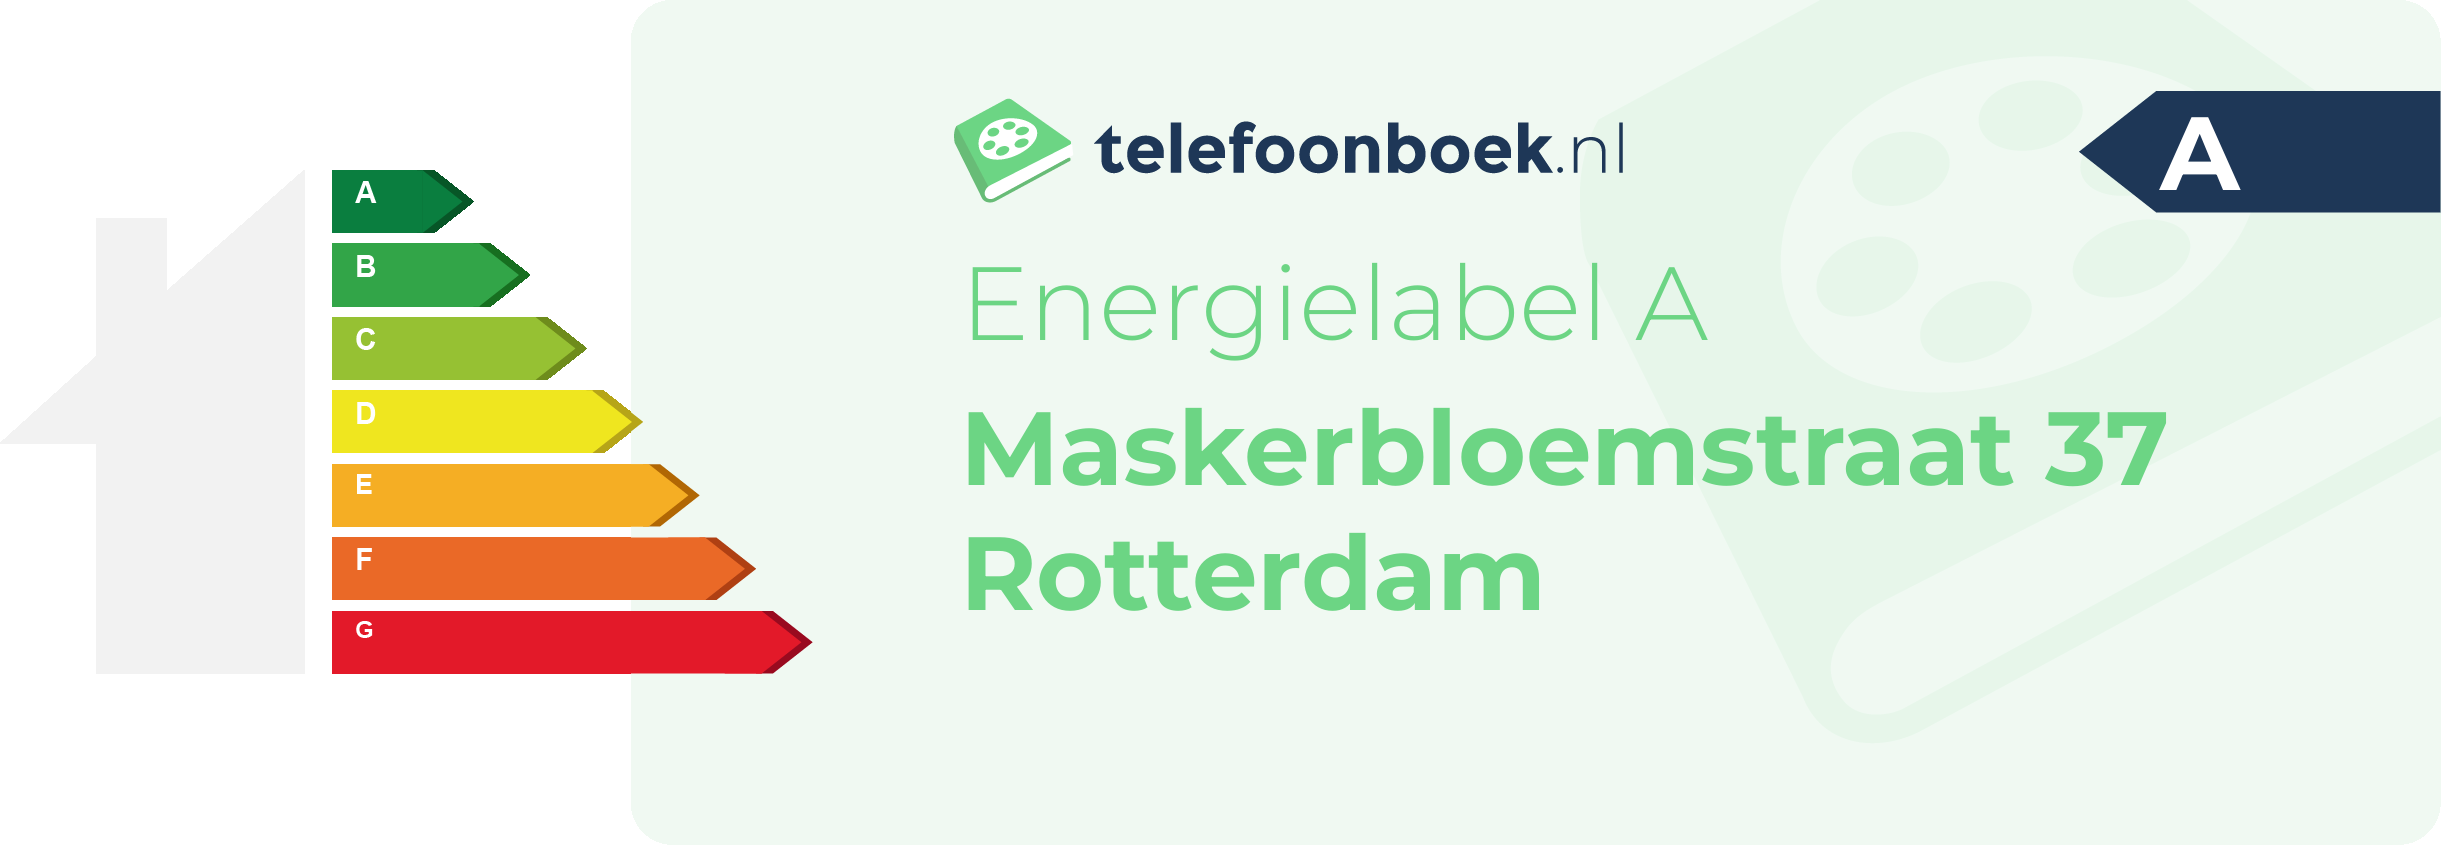 Energielabel Maskerbloemstraat 37 Rotterdam